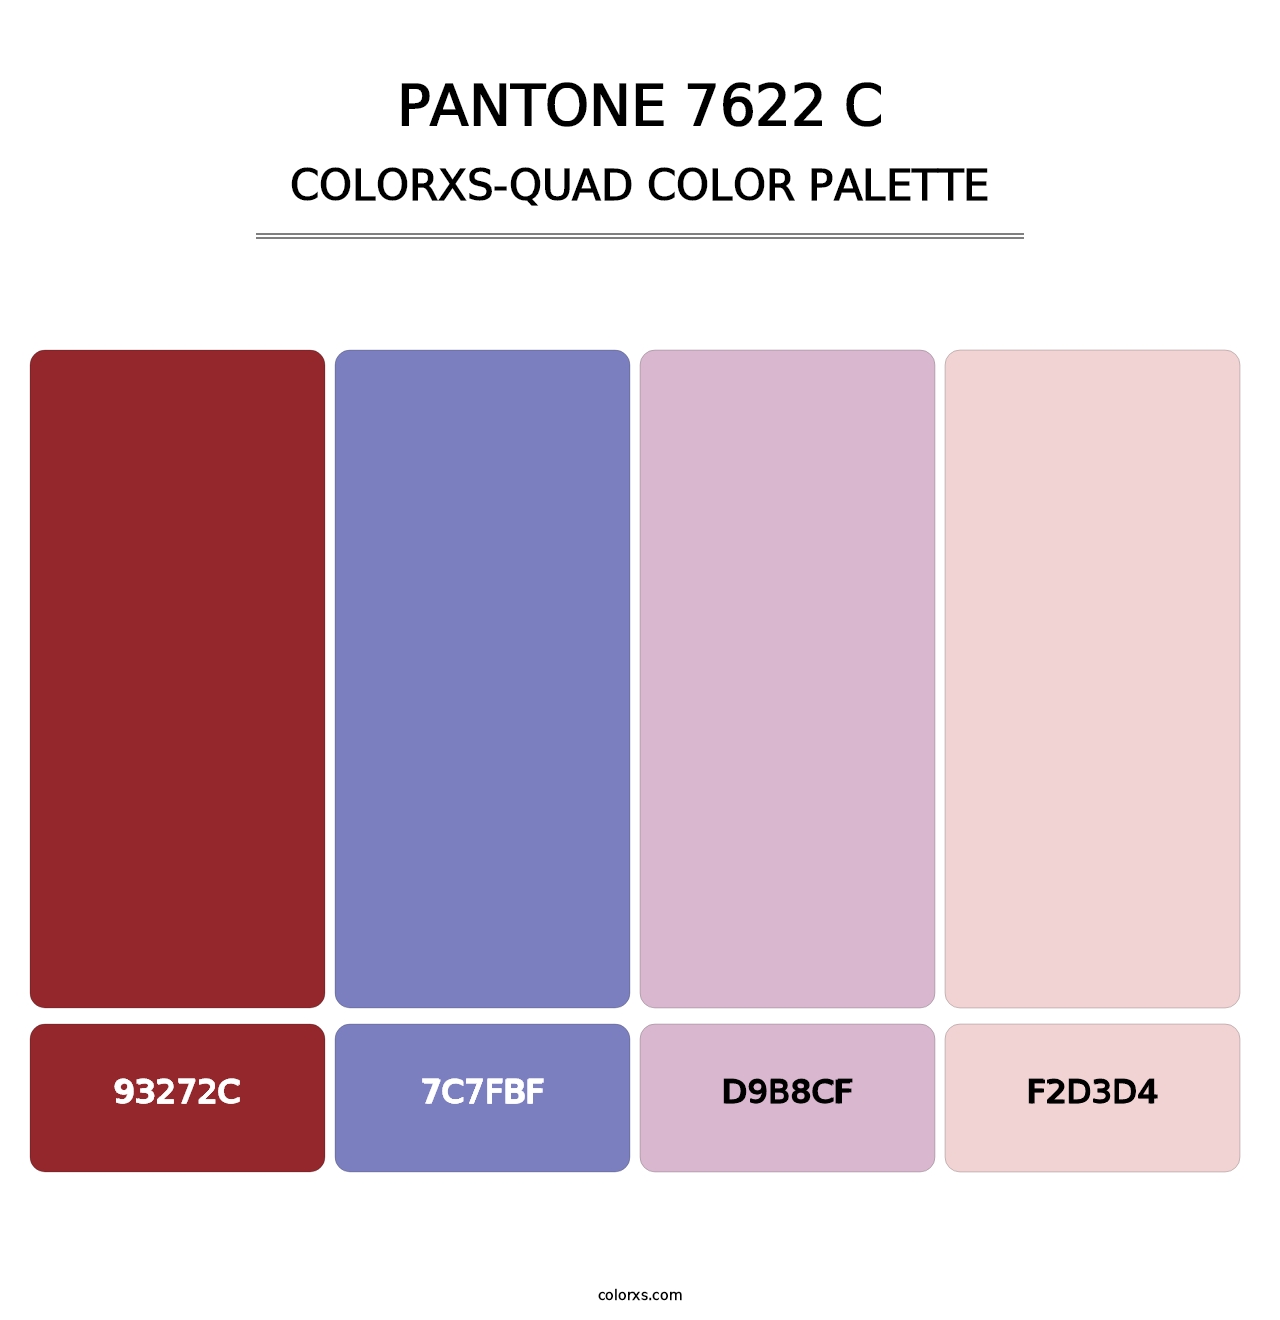 PANTONE 7622 C - Colorxs Quad Palette